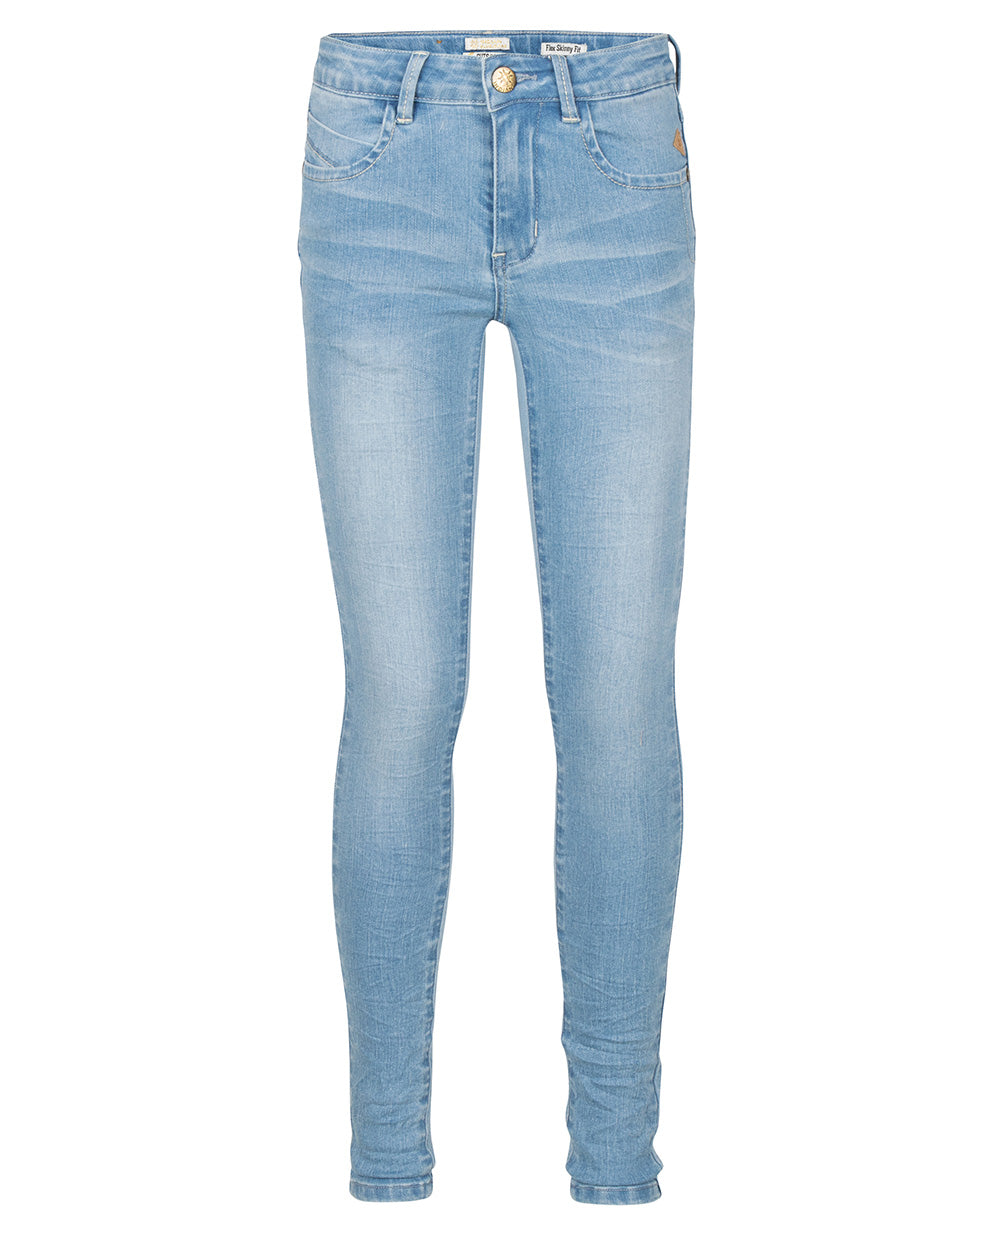 Meisjes Blue Jill Flex Skinny Fit van Indian Blue Jeans in de kleur Medium Denim in maat 176.